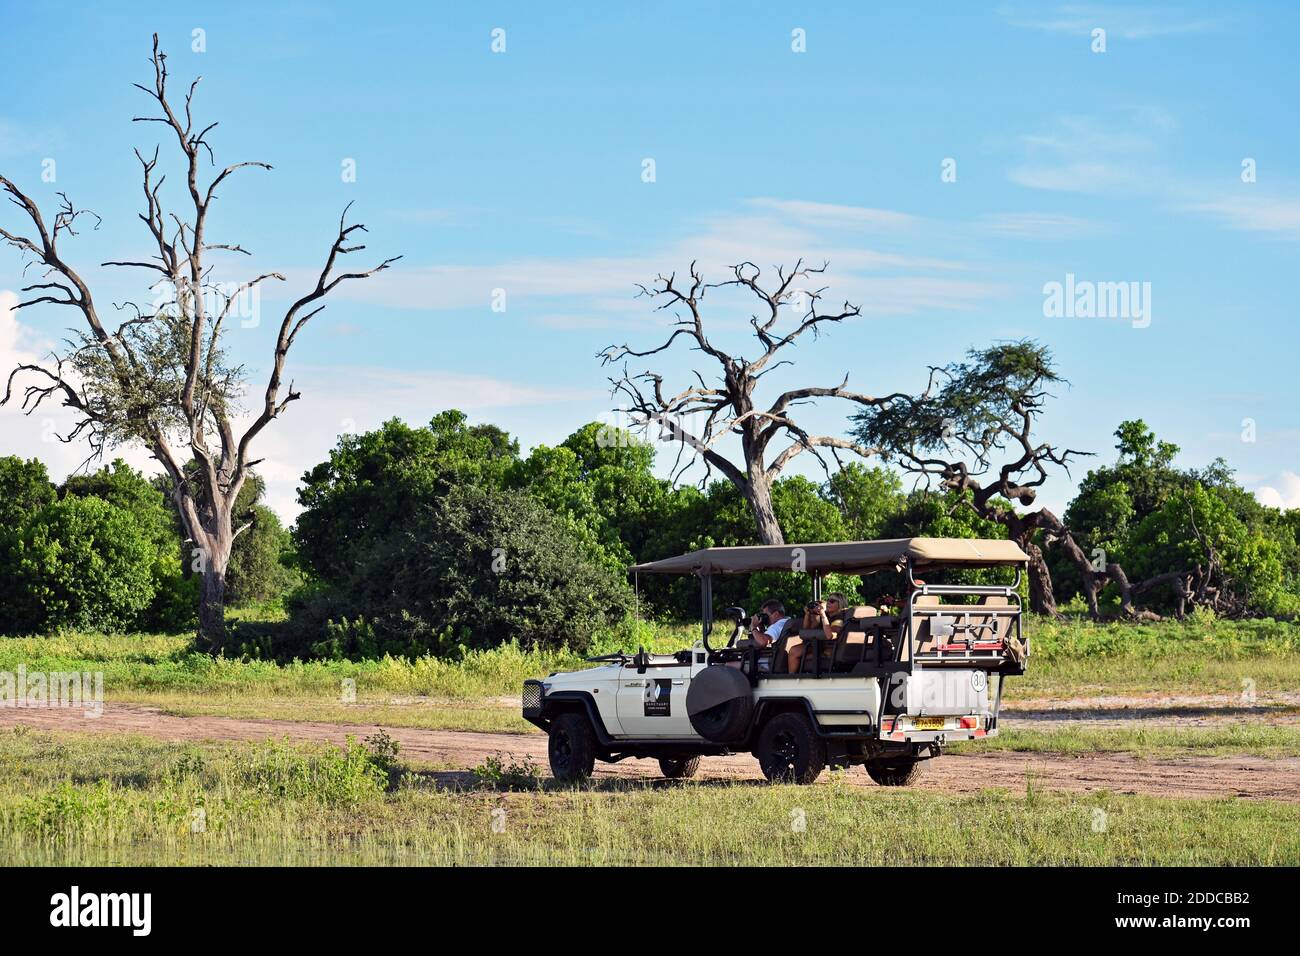 Ein Wildfahrzeug mit Touristen auf einer Safari-Stop für eine Pause, um Wildtiere entlang einer Schotterstraße im Chobe National Park, Botswana, Afrika zu beobachten Stockfoto